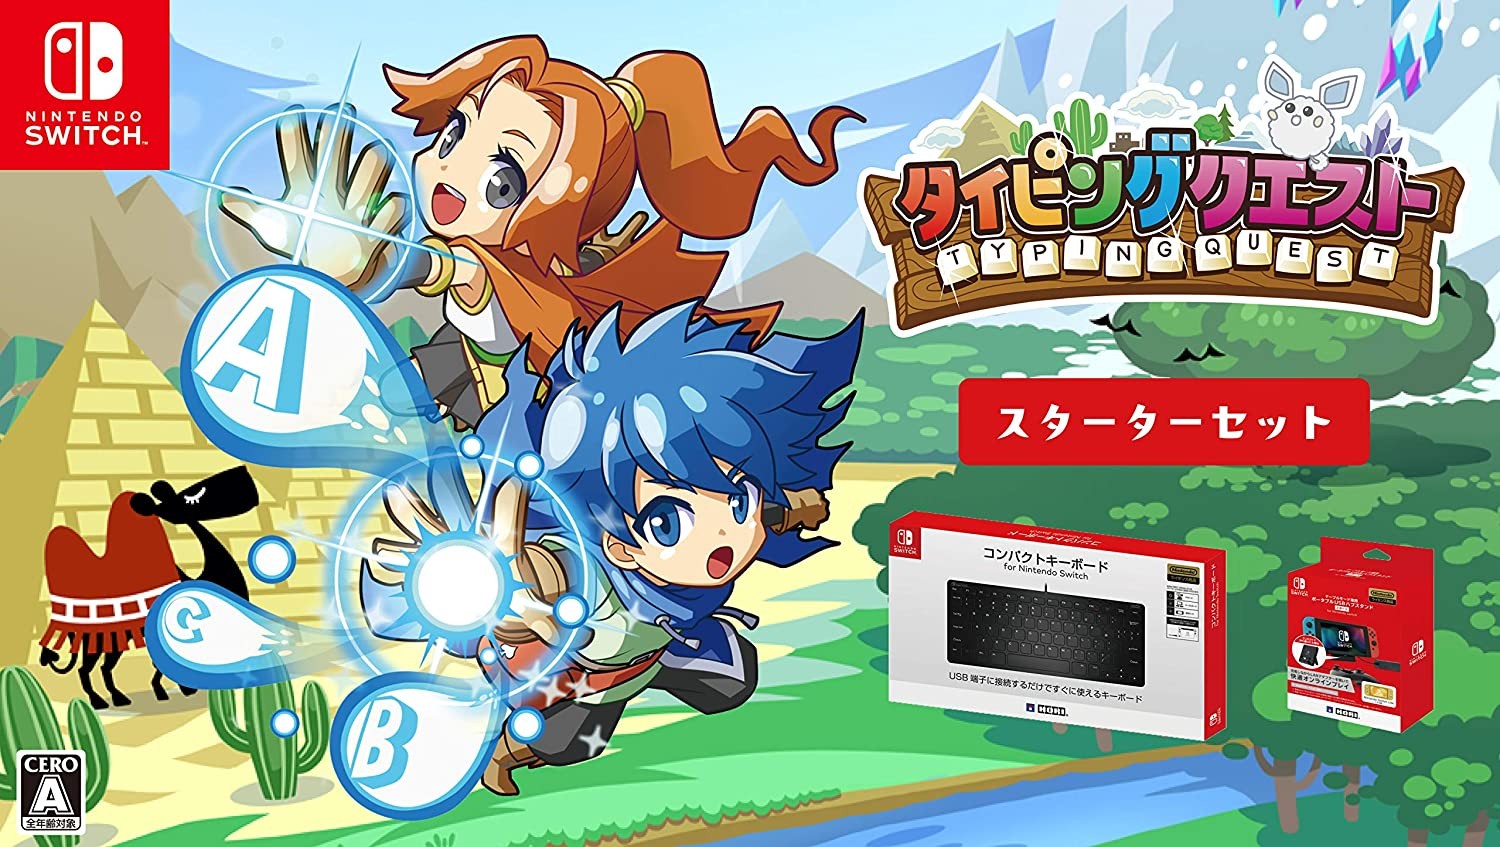 日本厂商为Switch推出公用挨字实习游戏《挨字冒险》